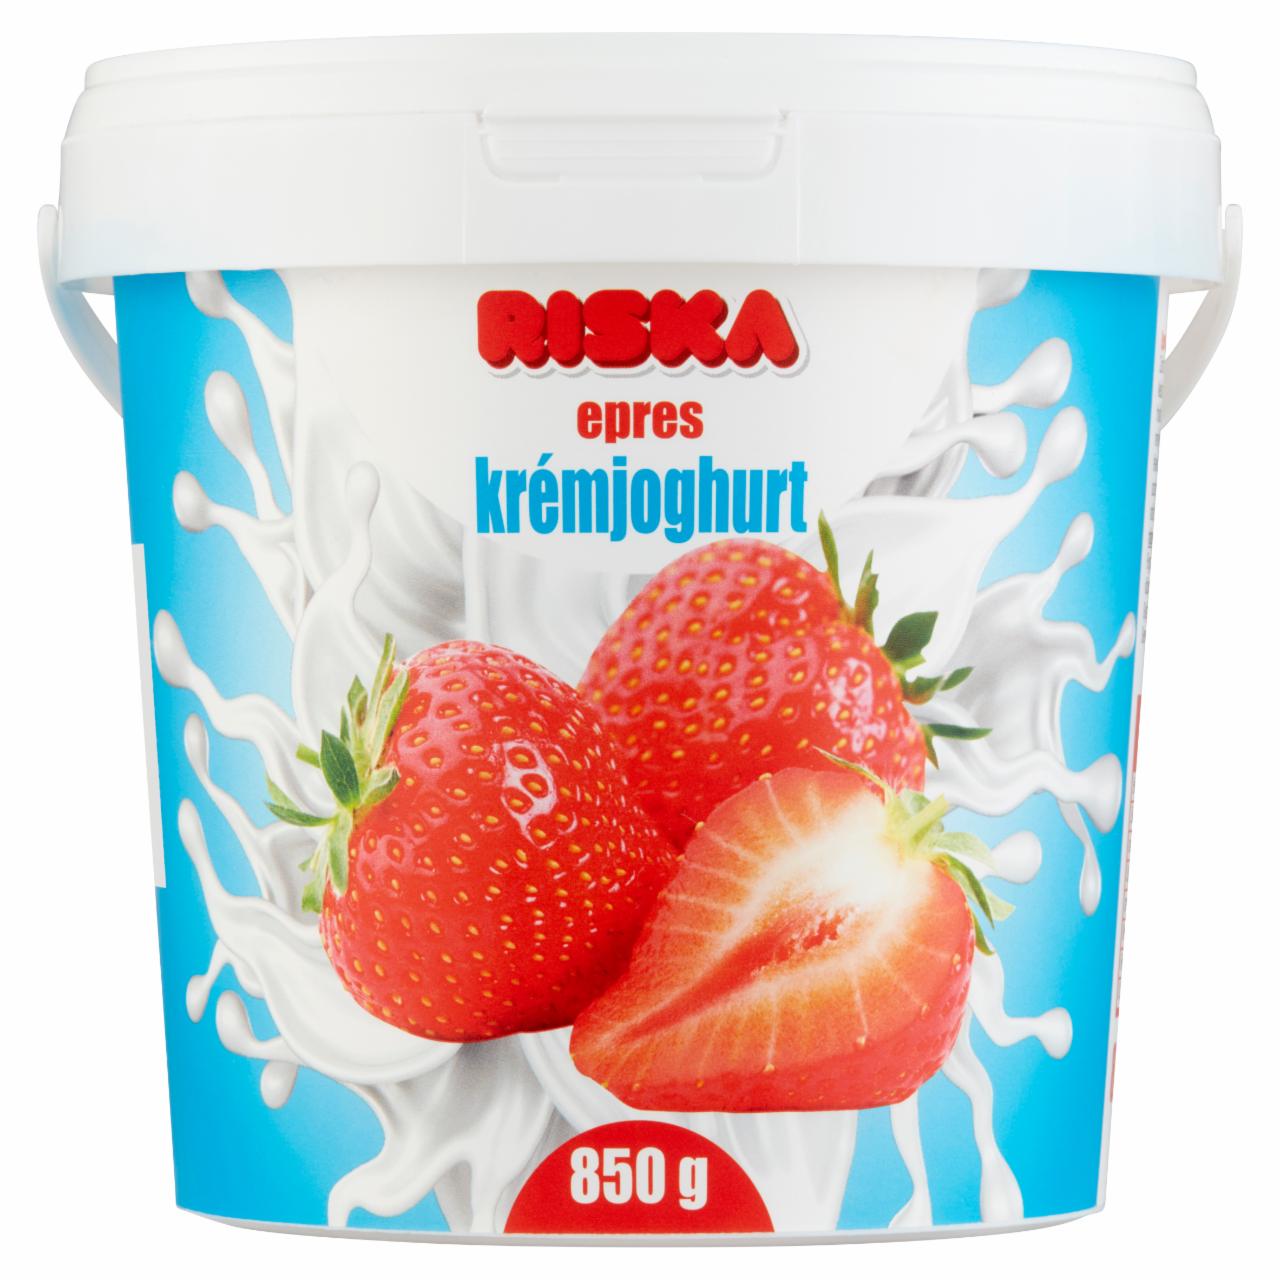 Képek - Riska epres krémjoghurt 850 g